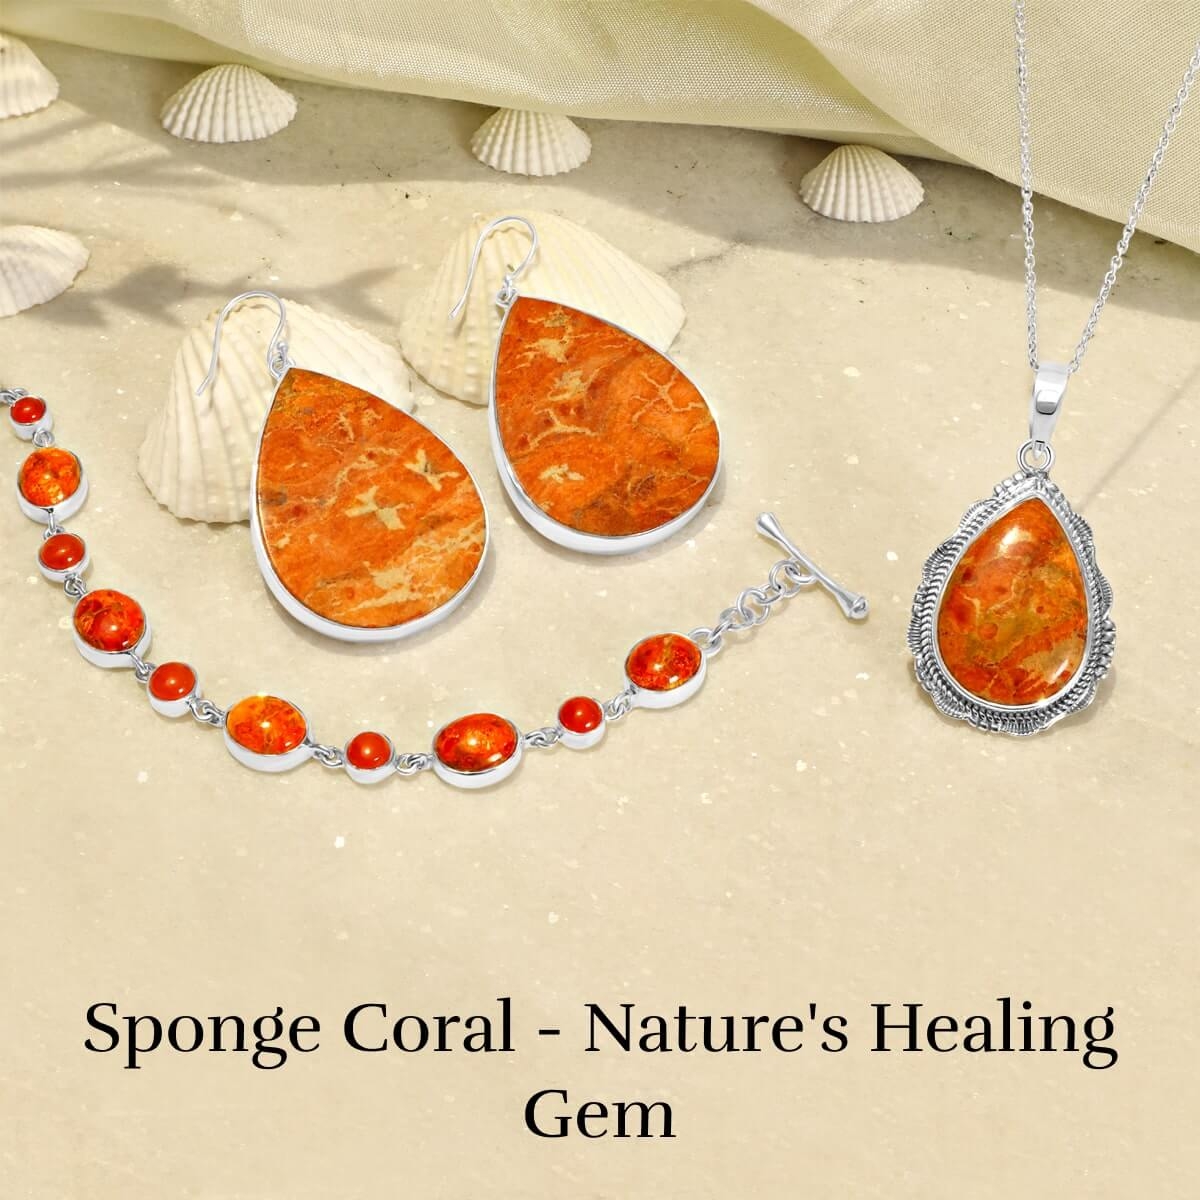 Healing properties of sponge coral Gemstone